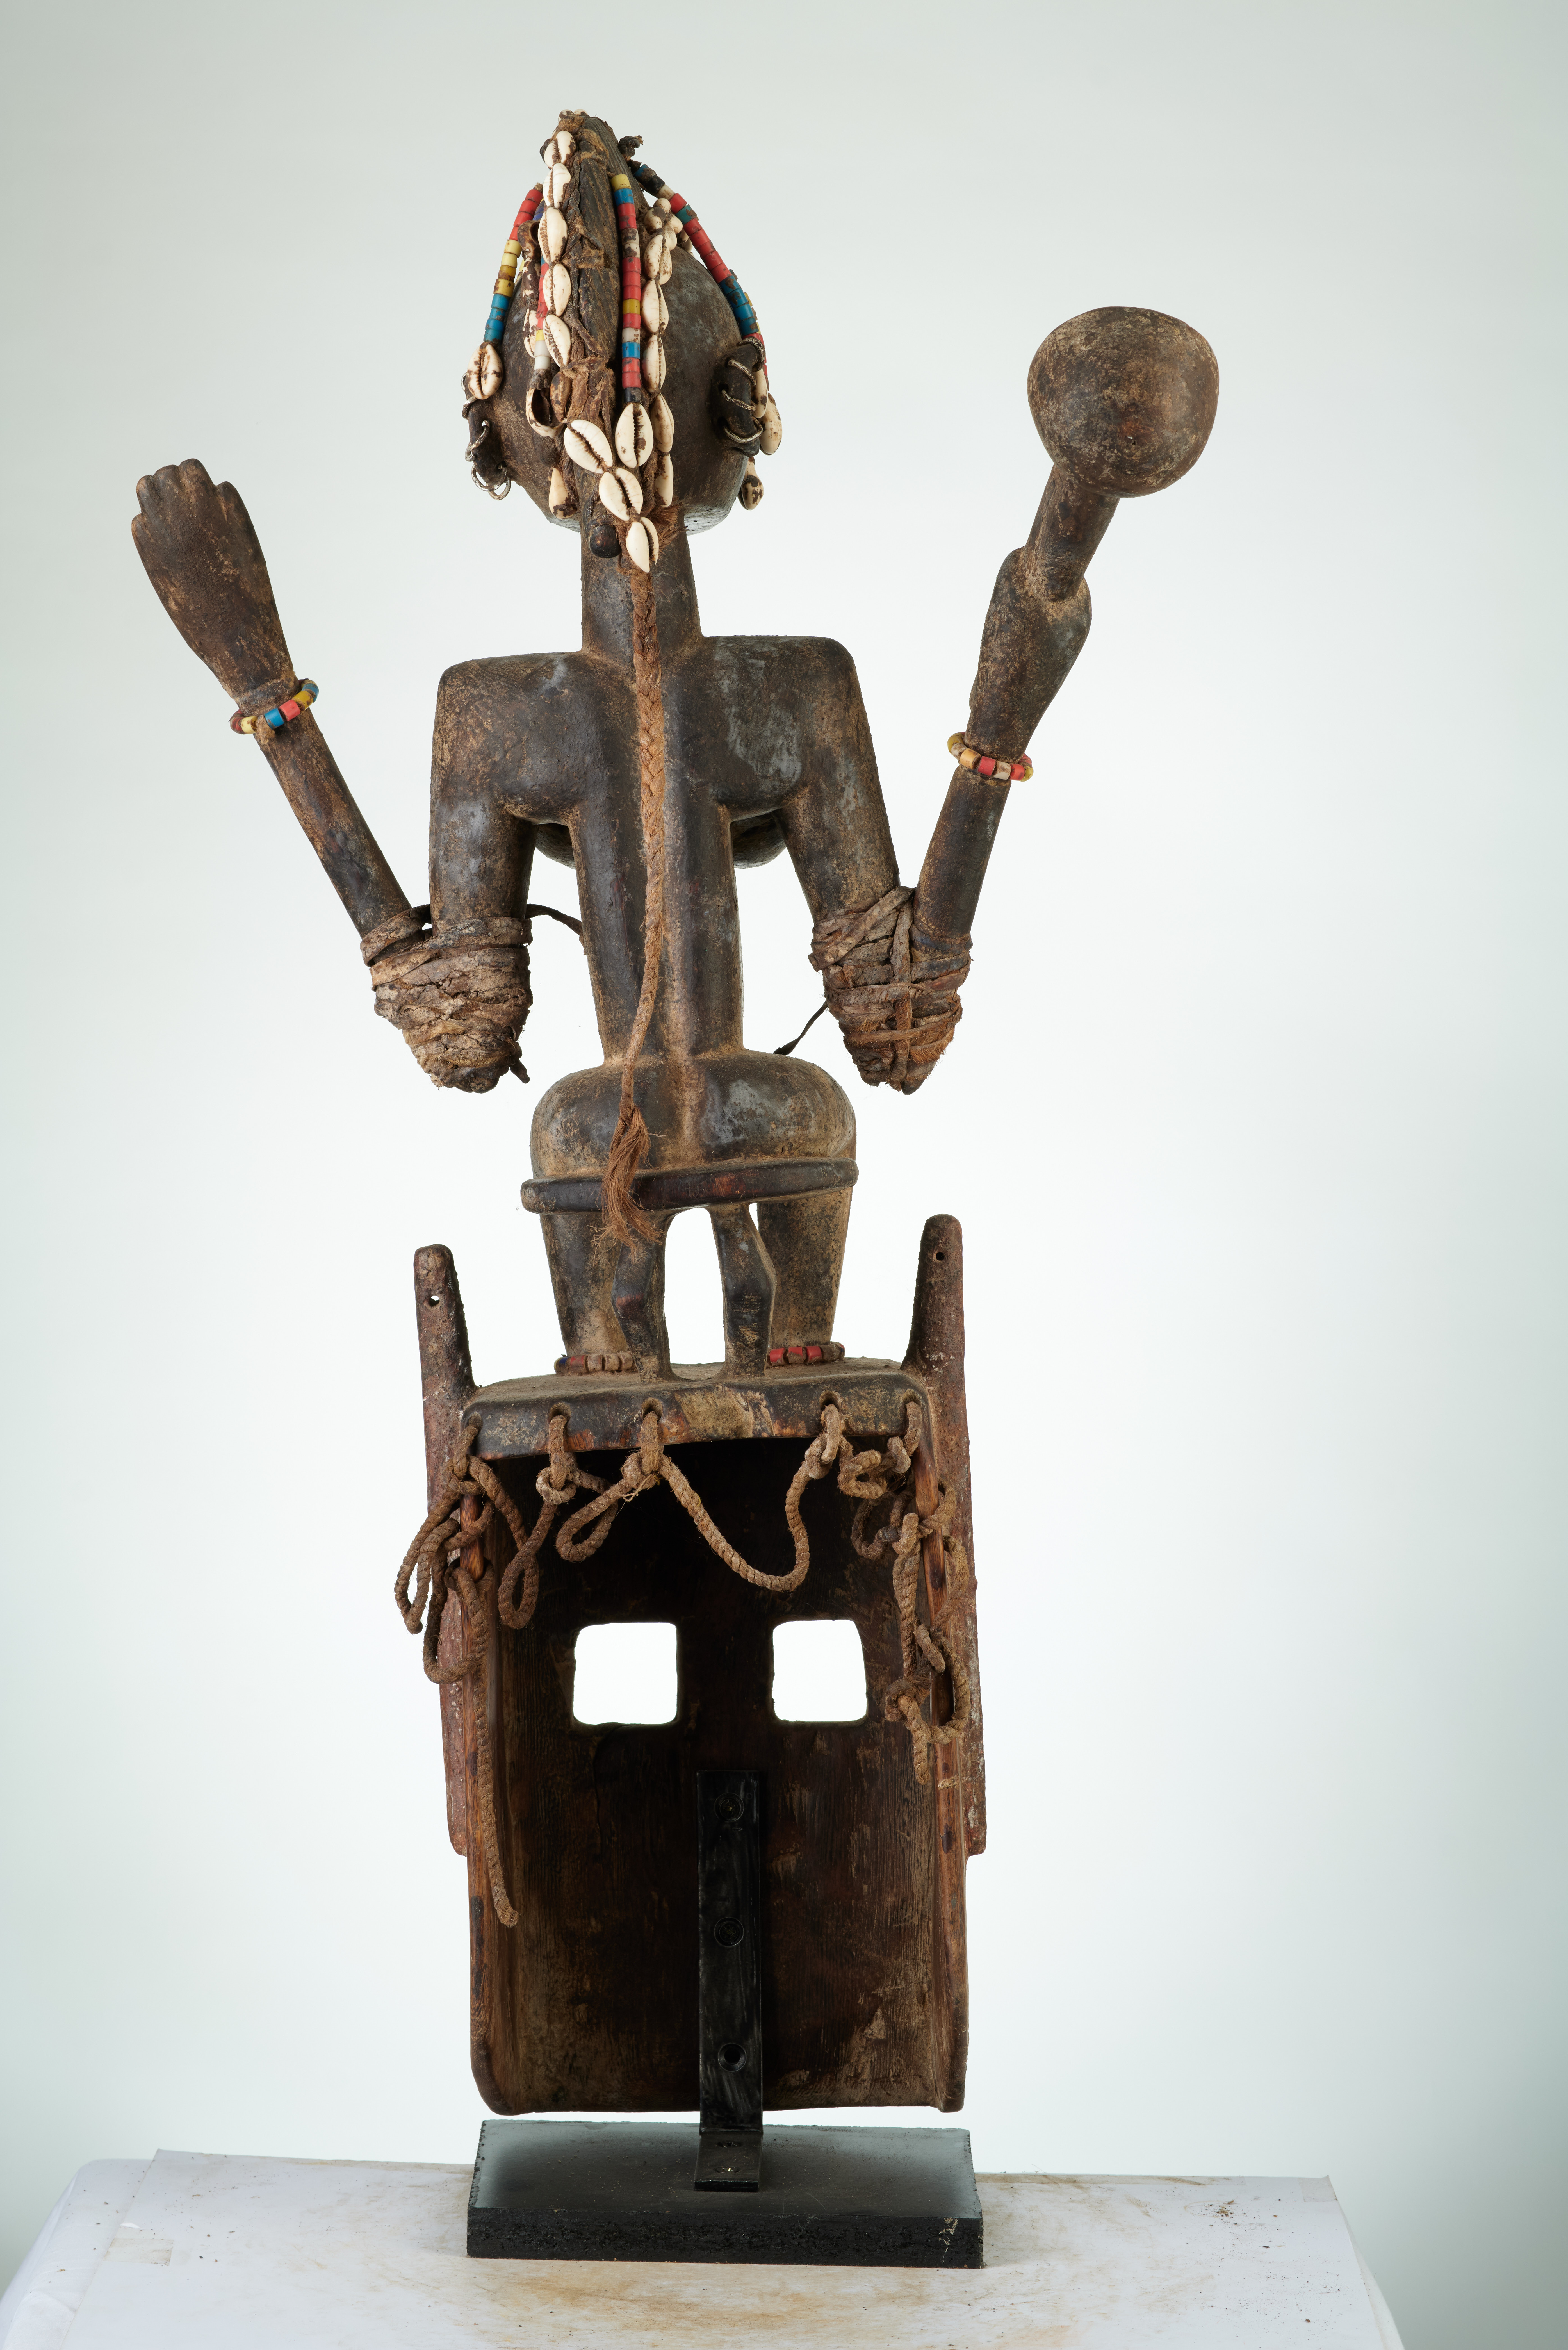 Dogon(masque), d`afrique : Mali, statuette Dogon(masque), masque ancien africain Dogon(masque), art du Mali - Art Africain, collection privées Belgique. Statue africaine de la tribu des Dogon(masque), provenant du Mali, 1434/1150.Masque Dogon Satimbe représentant la première Yasiguine,soeur des masques,unique femme autorisée à participer à la cérémonie du Sigui.Masque de h.30cm et une femme assise de h.65cm.Elle a les avant-bras attaché avec des cordes,amovibles.Ses oreilles et sa crête sont entourés d